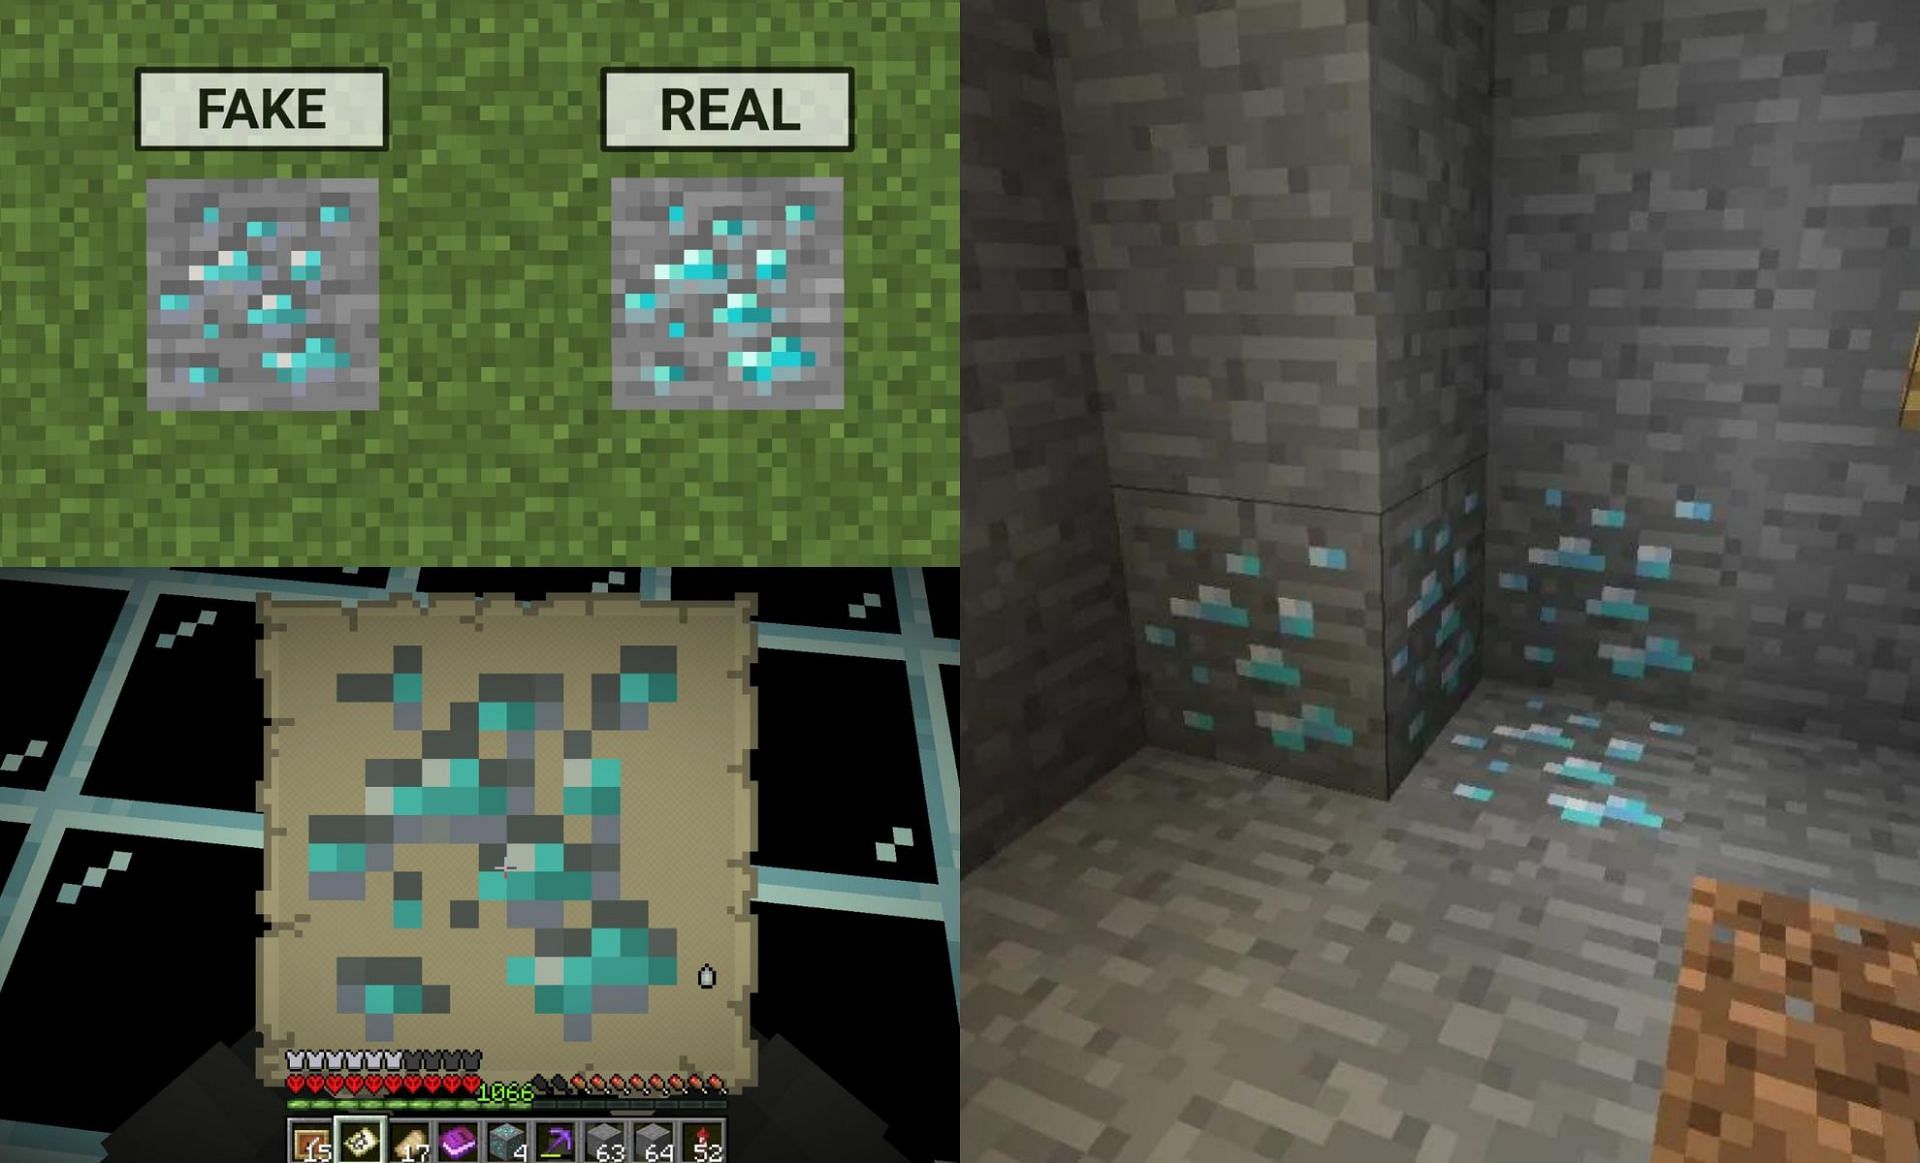 The fake ore looks just like the real one (Image via u/Brooke-Valley on Reddit, Mojang)